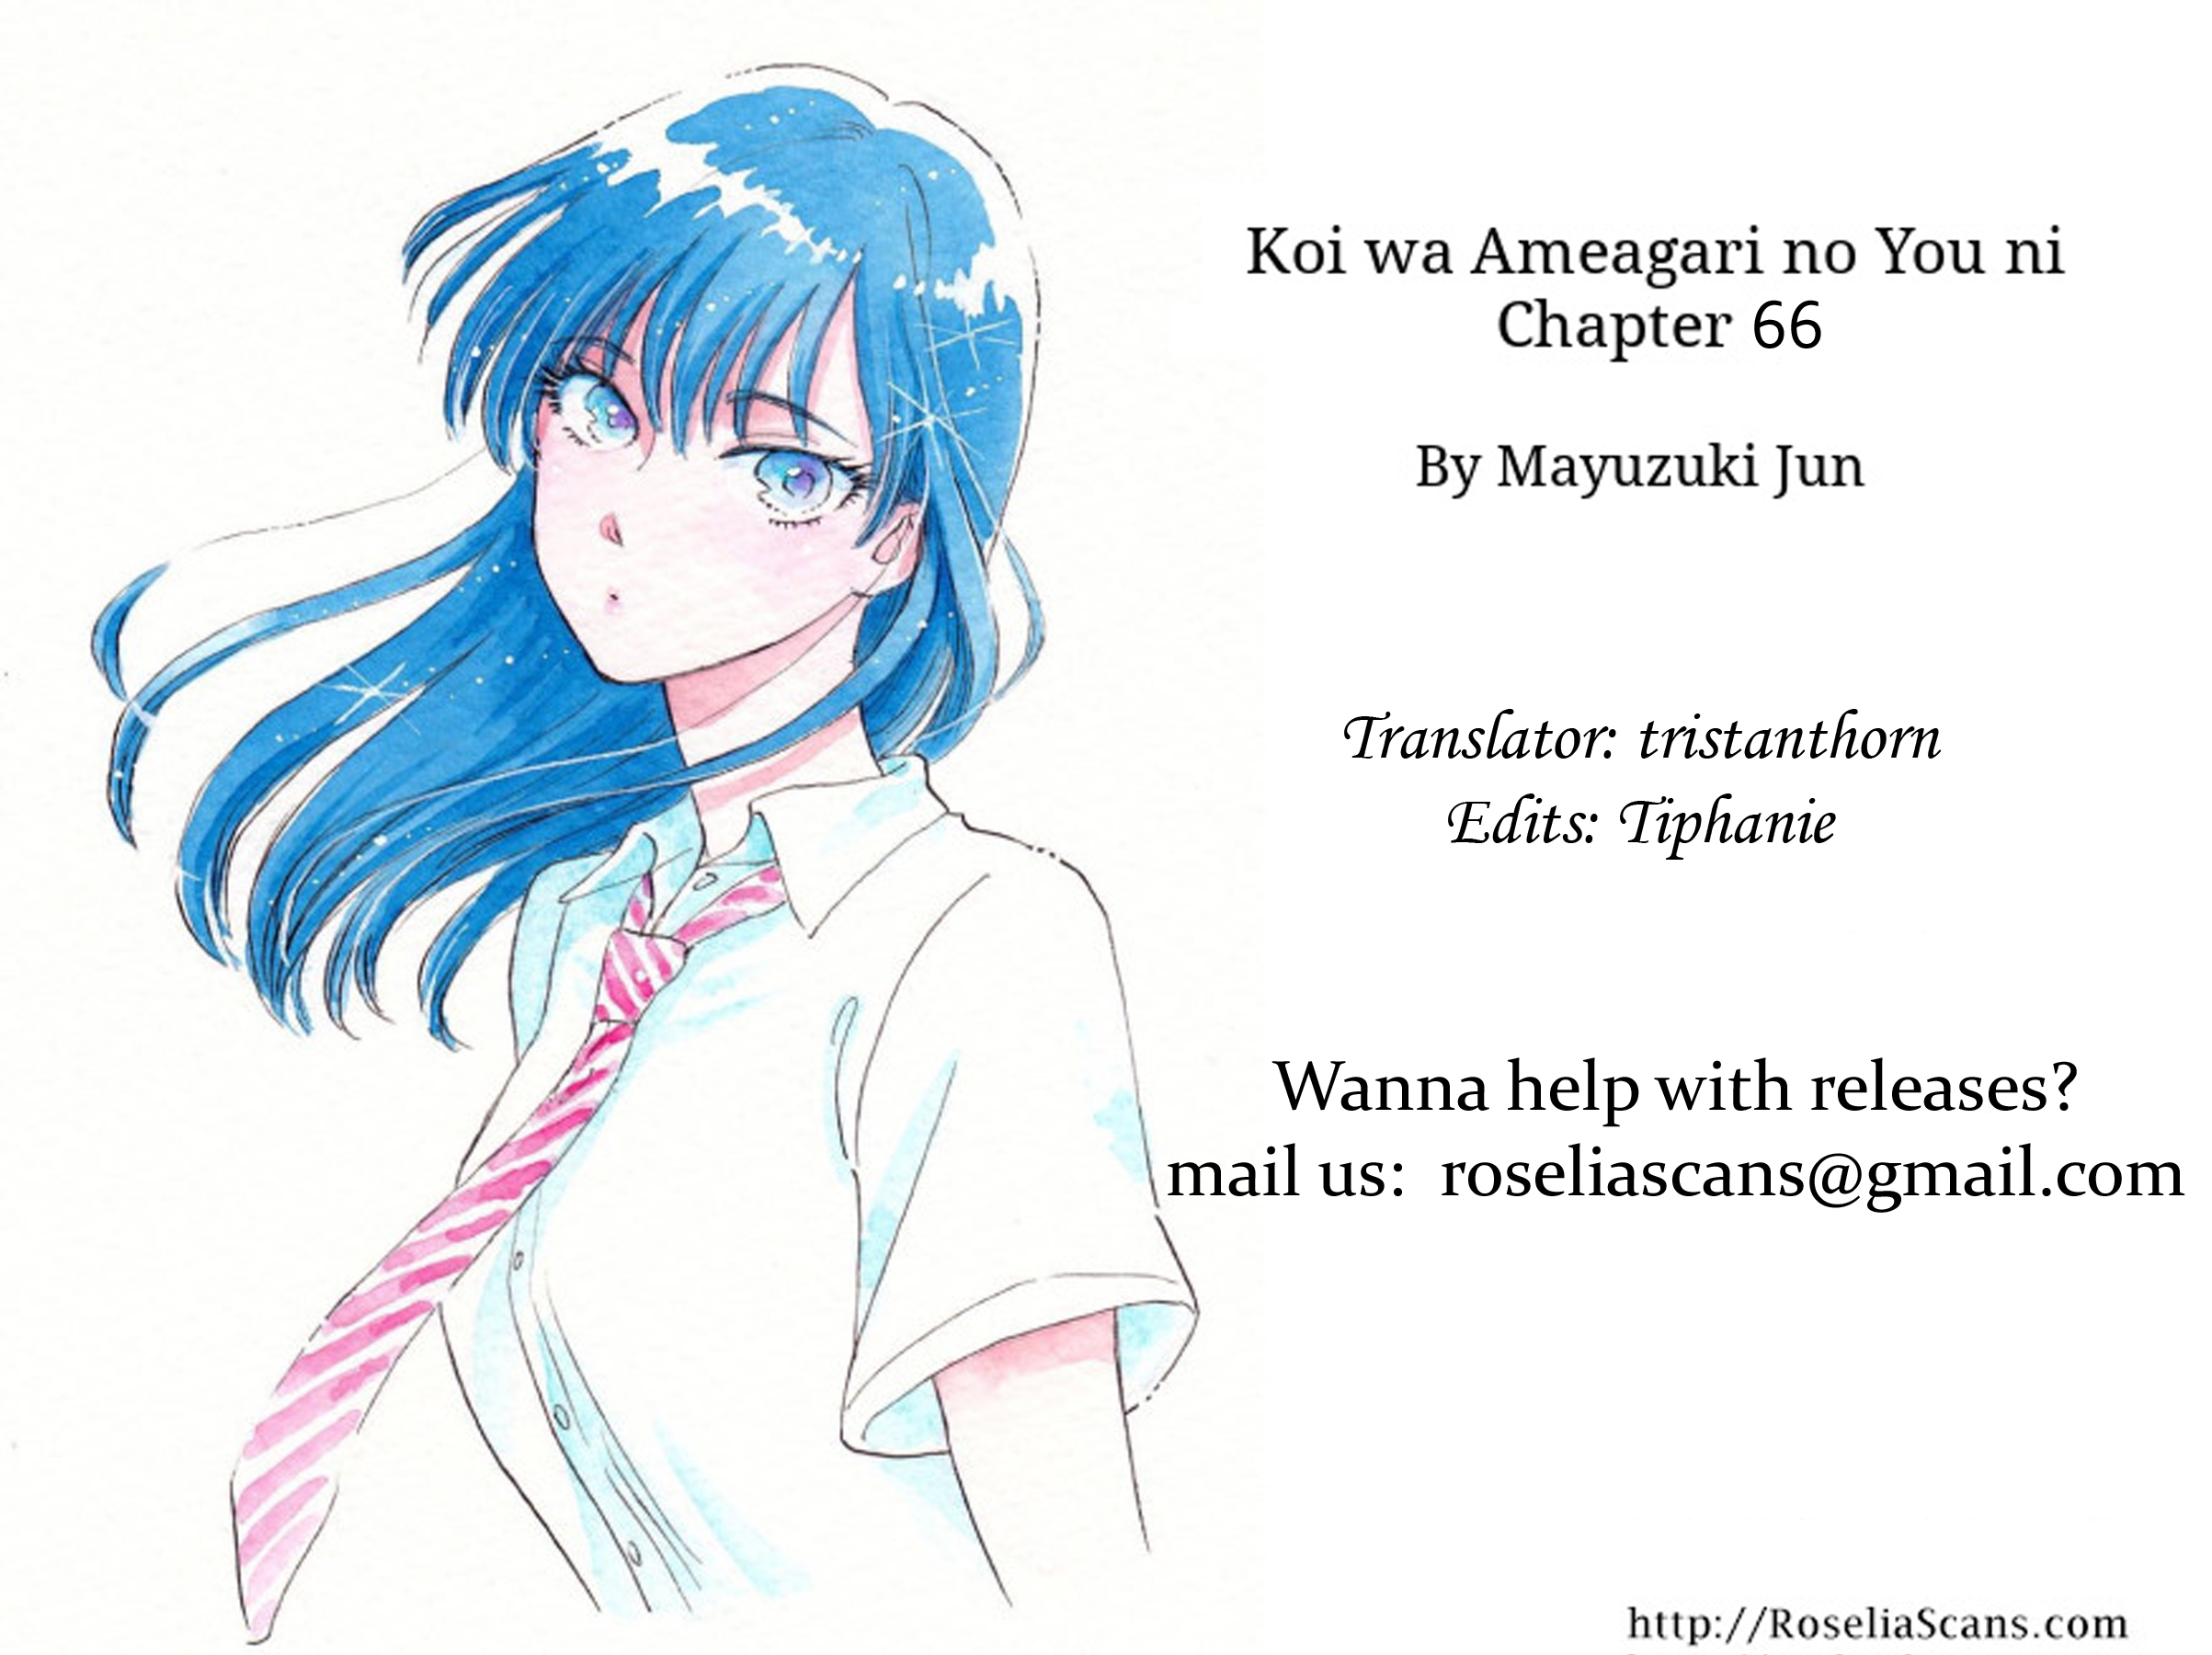 Koi wa Amaagari no You ni Vol.9 Chapter 66